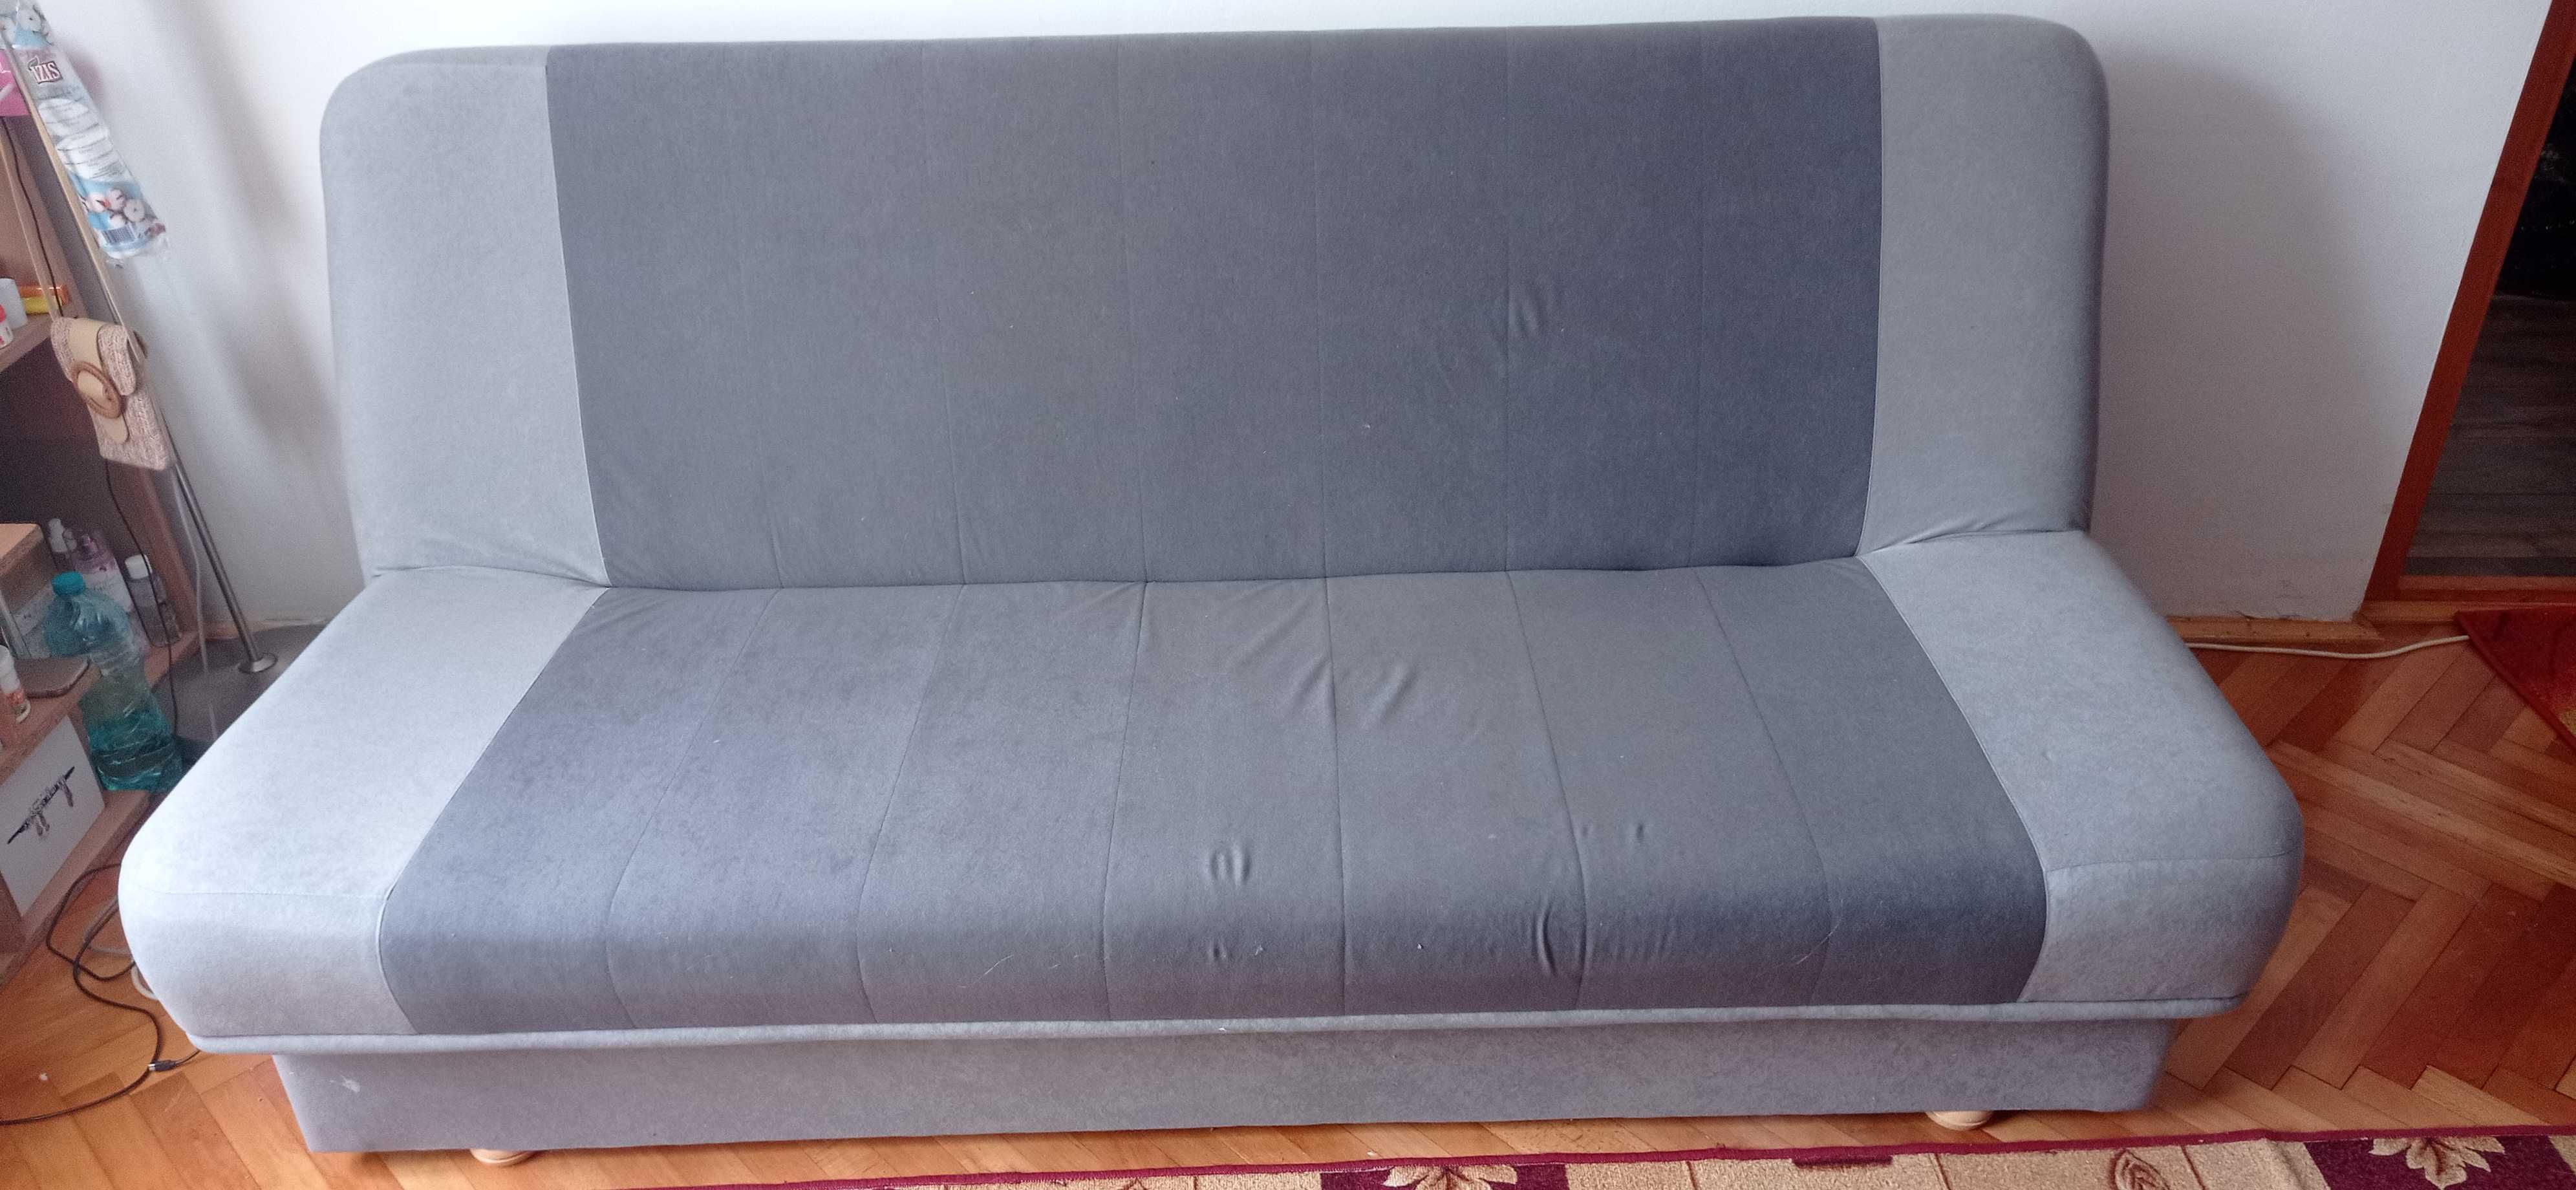 Canapea cu ladă depozitare 190x120